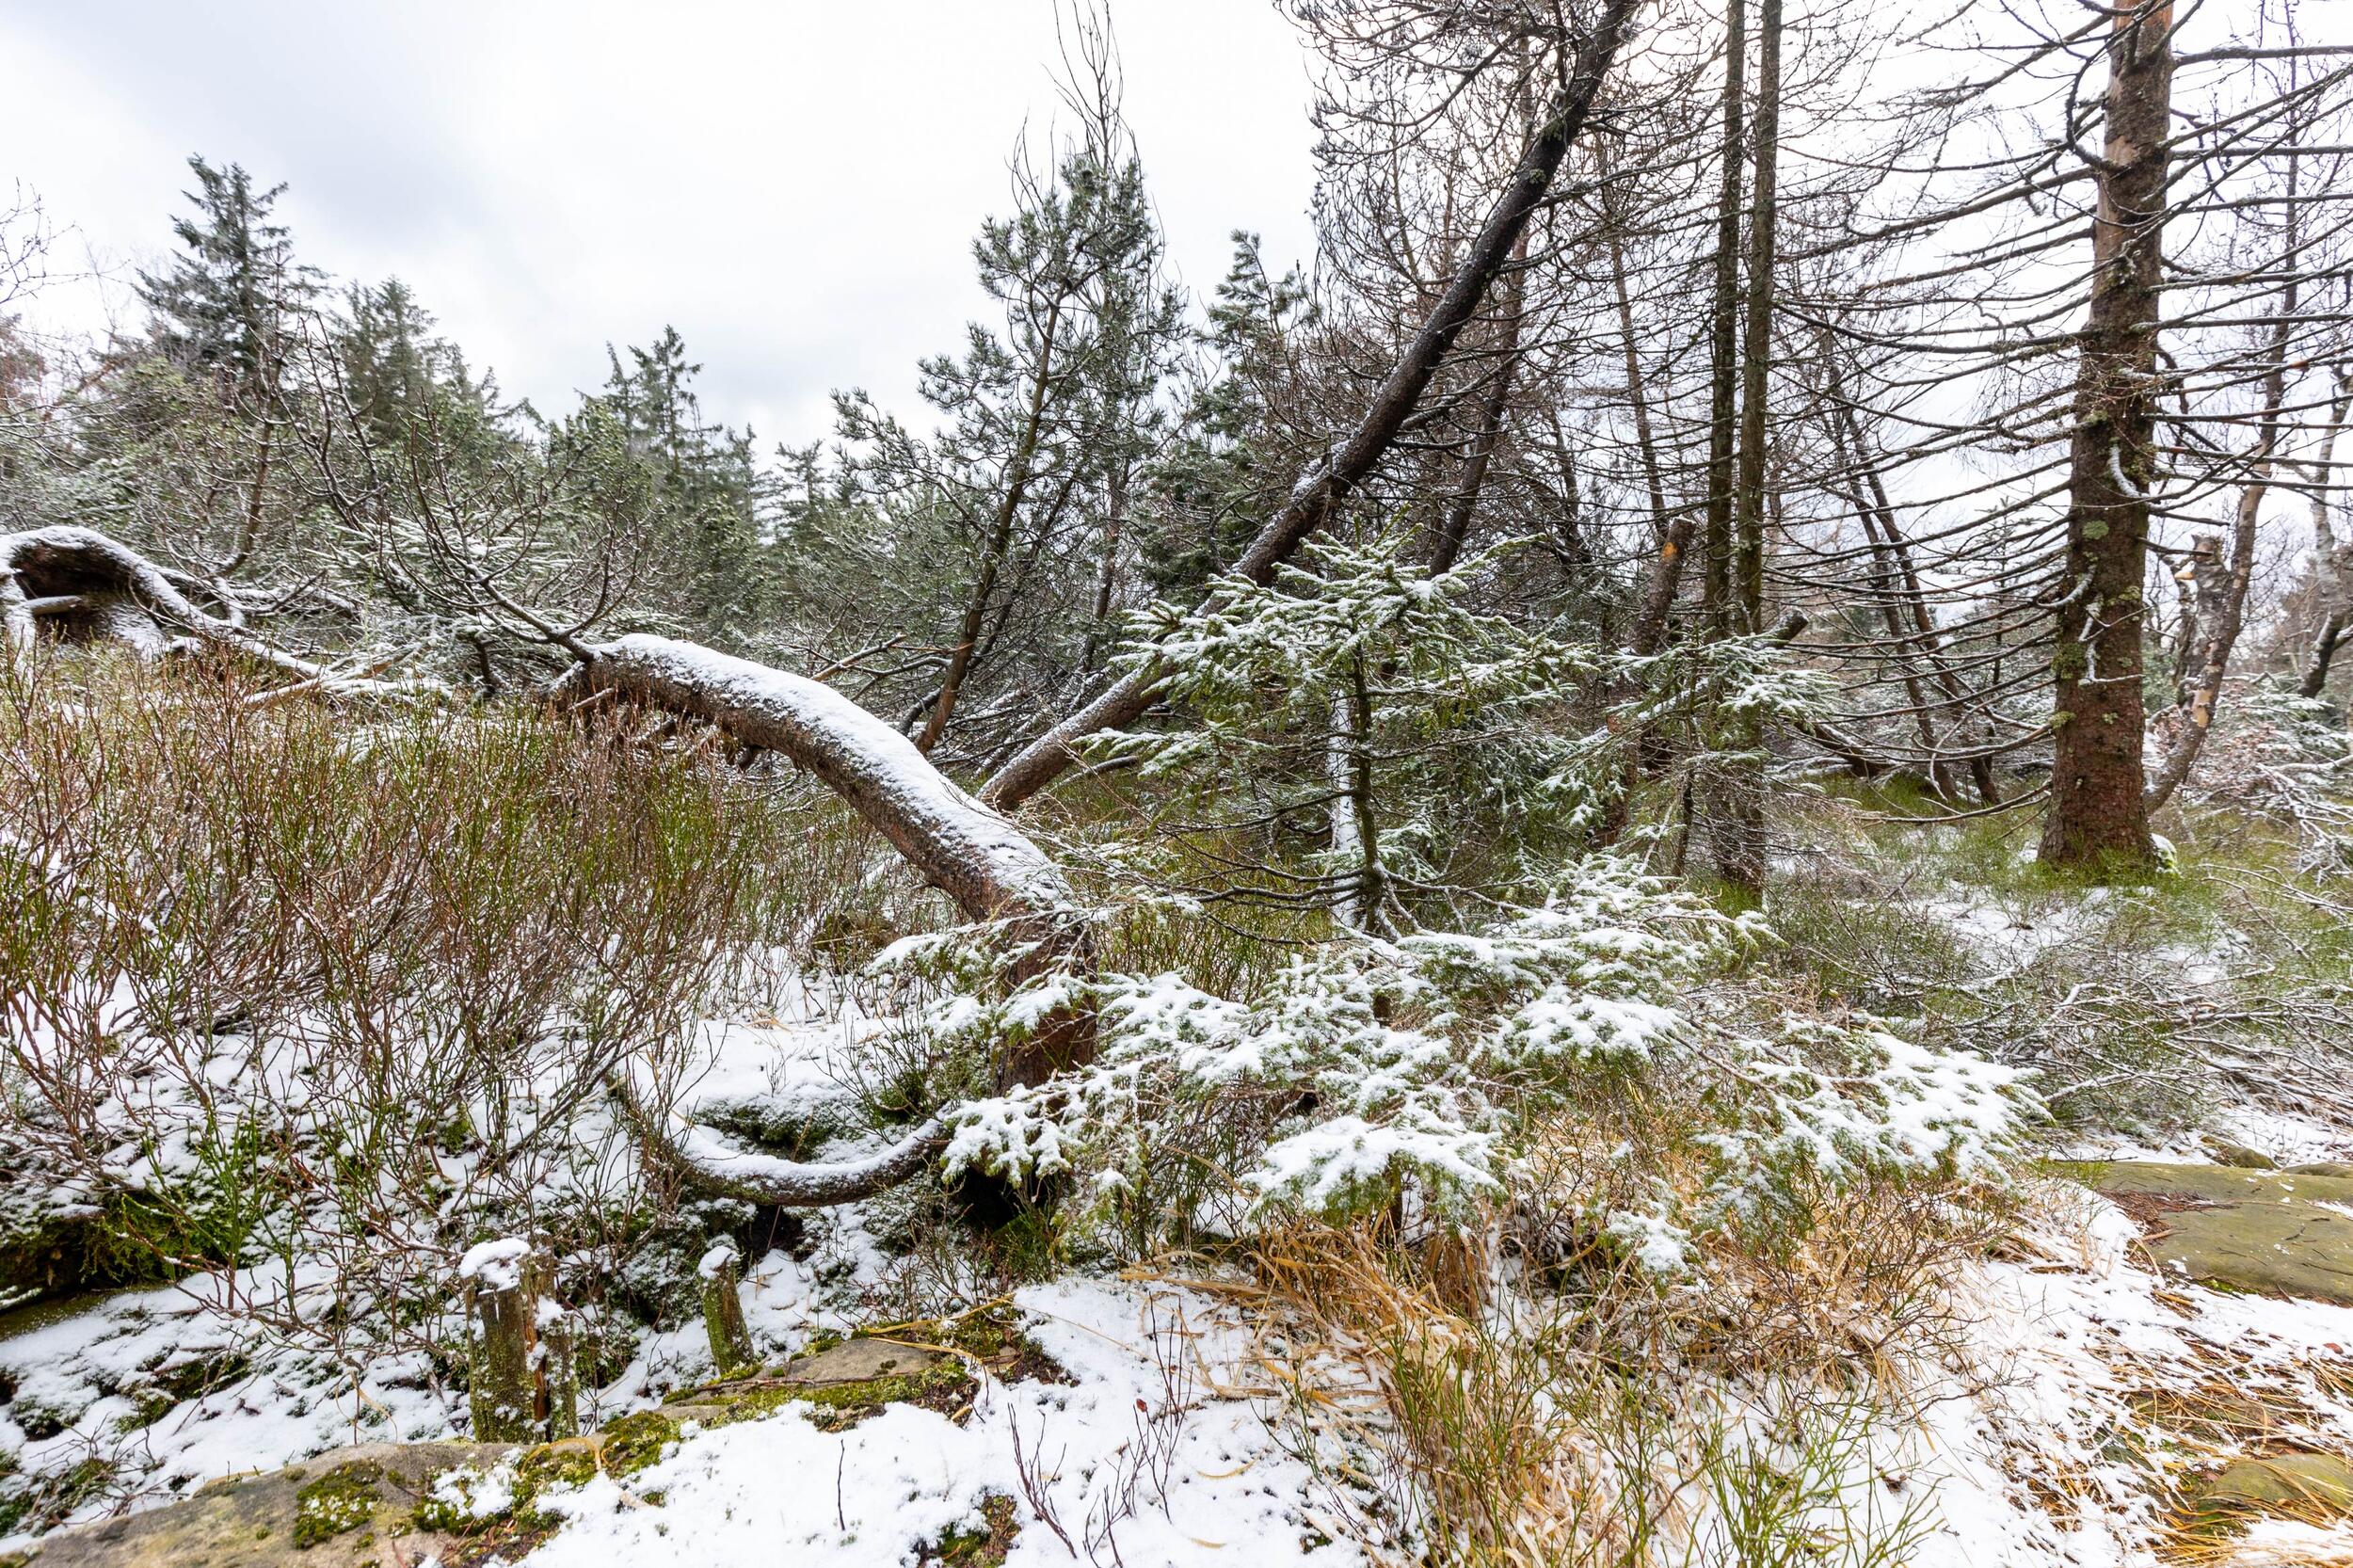 Totoholz und kleine Bäume leicht mit Schnee bedeckt